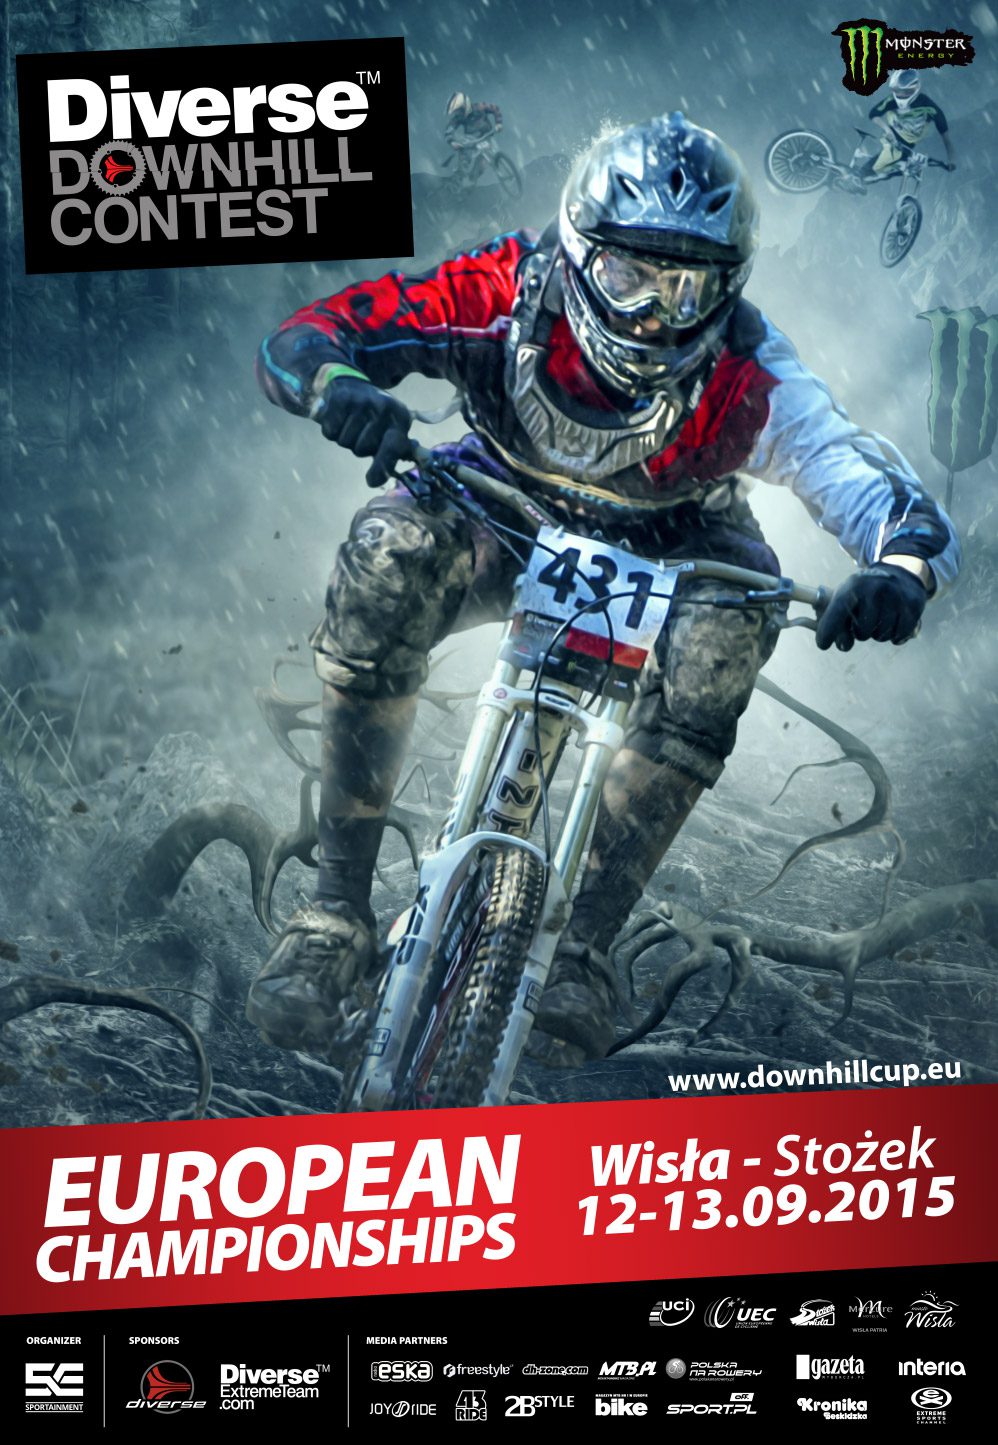 Mistrzostwa Europy w zjeździe na rowerach: Diverse Downhill Contest - video zapowiedź